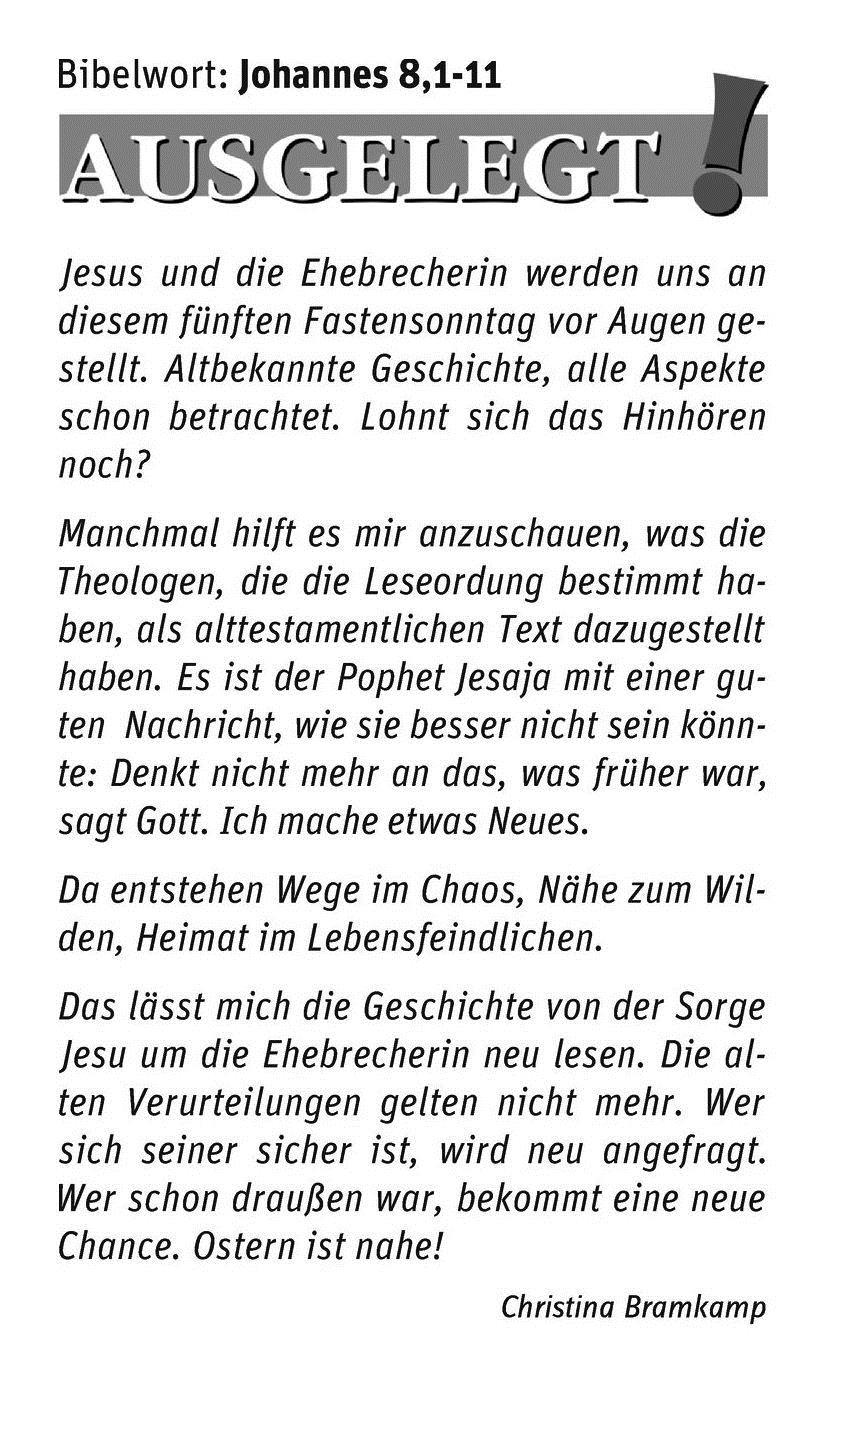 Pastoralverbund Wittgenstein Bad Berleburg, Bad Laasphe, Erndtebrück Pfarrer Bernhard Lerch Tel.